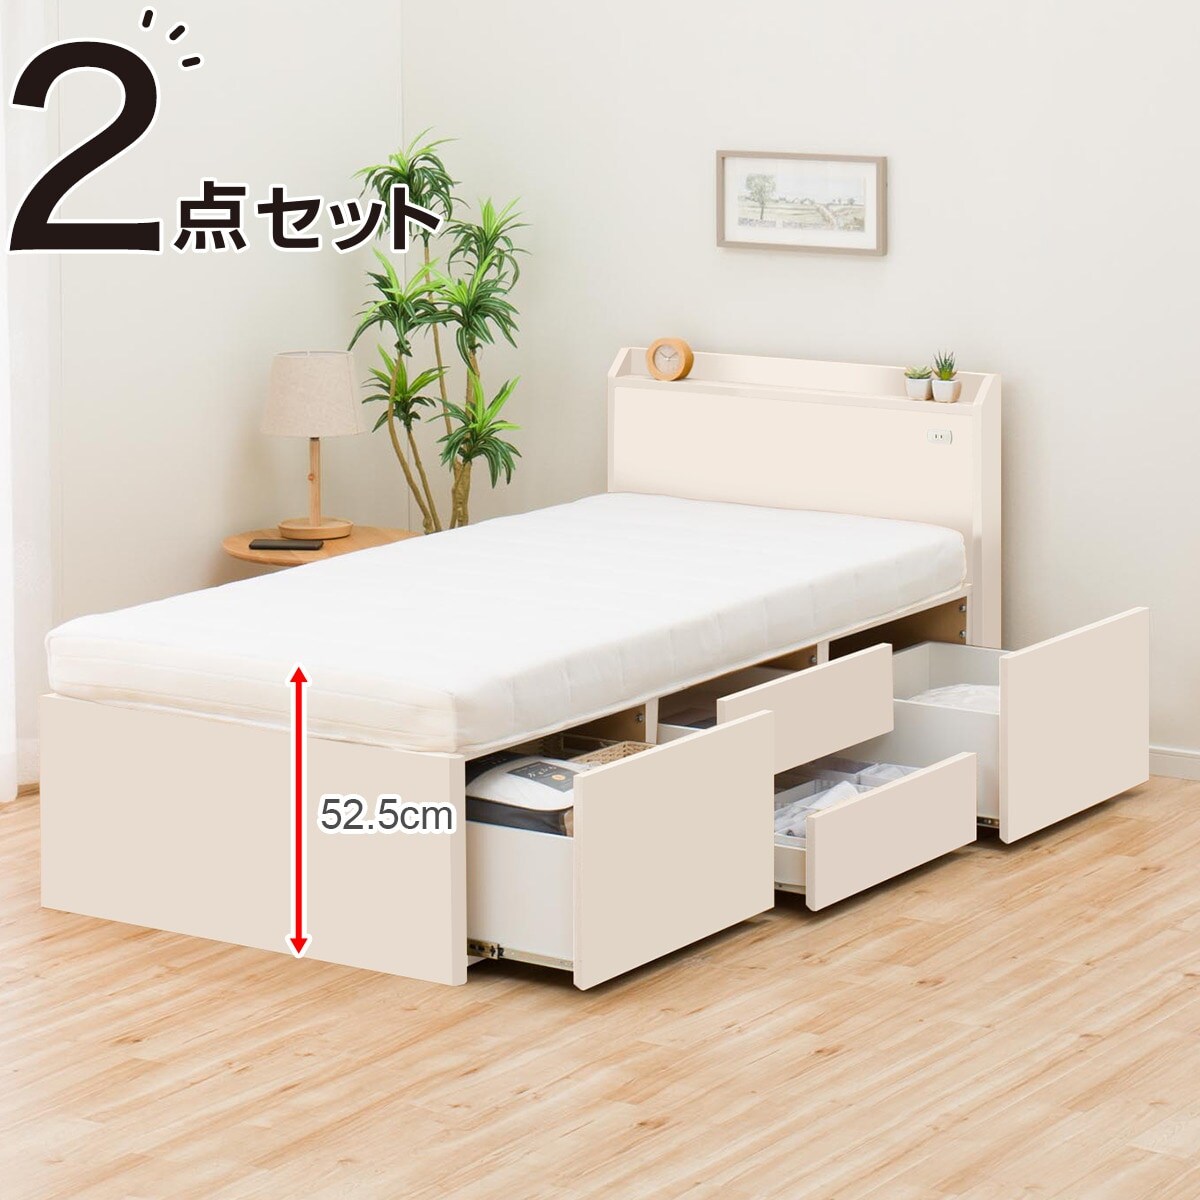 シングルベッド マットレス付き ニトリ - インテリア・家具の人気商品 